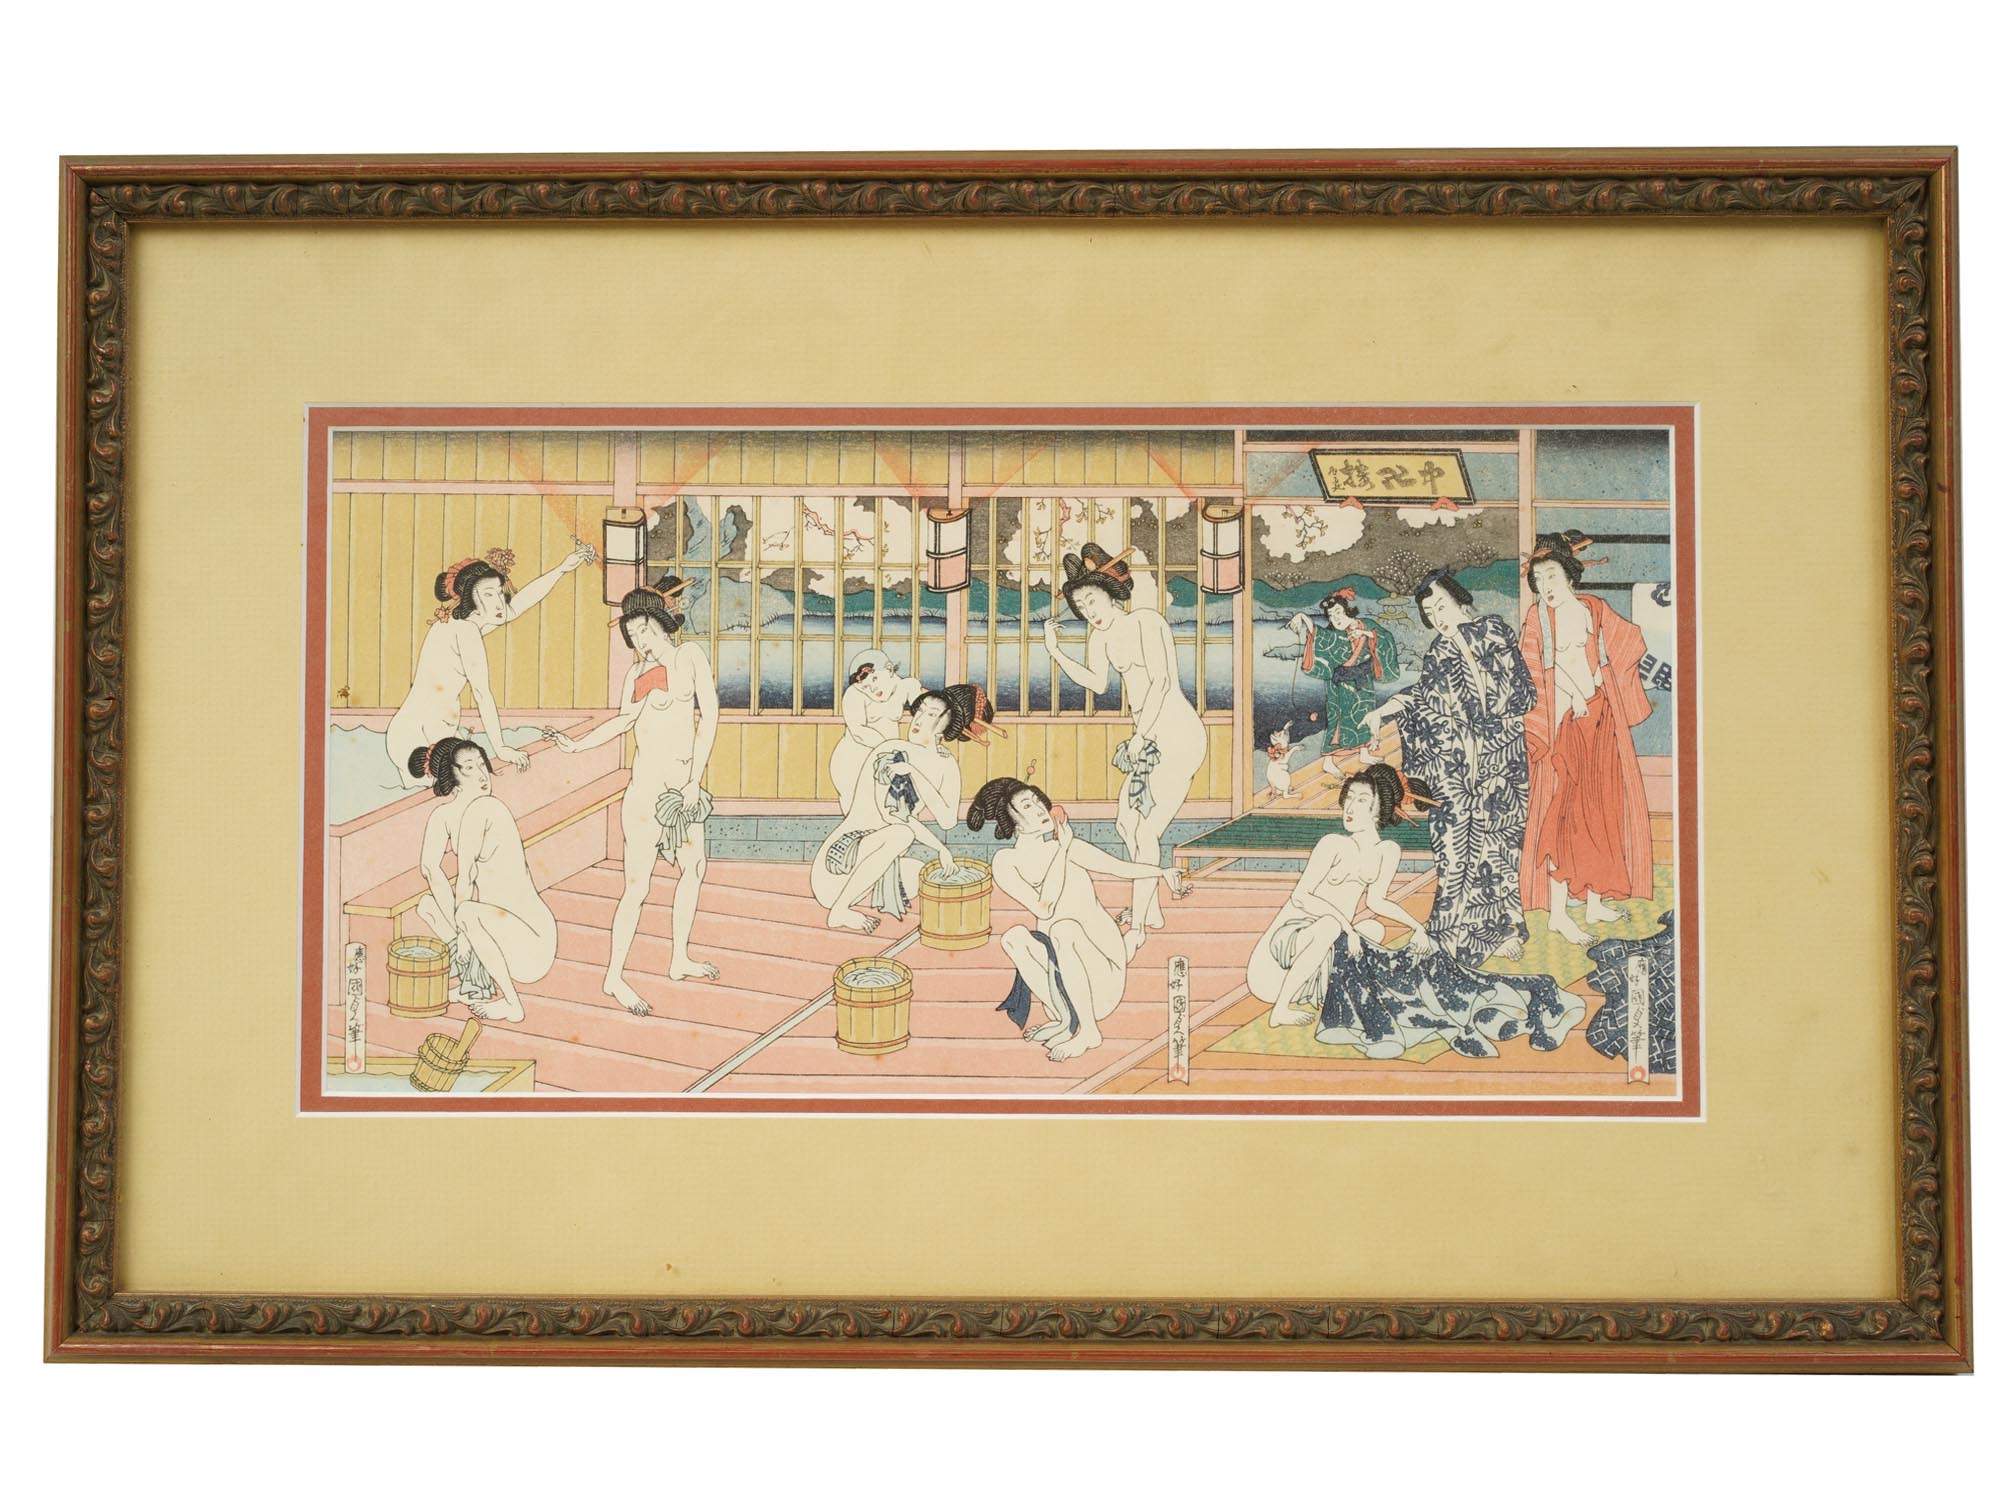 A JAPANESE WOODBLOCK PRINT BY UTAGAWA KUNISADA II